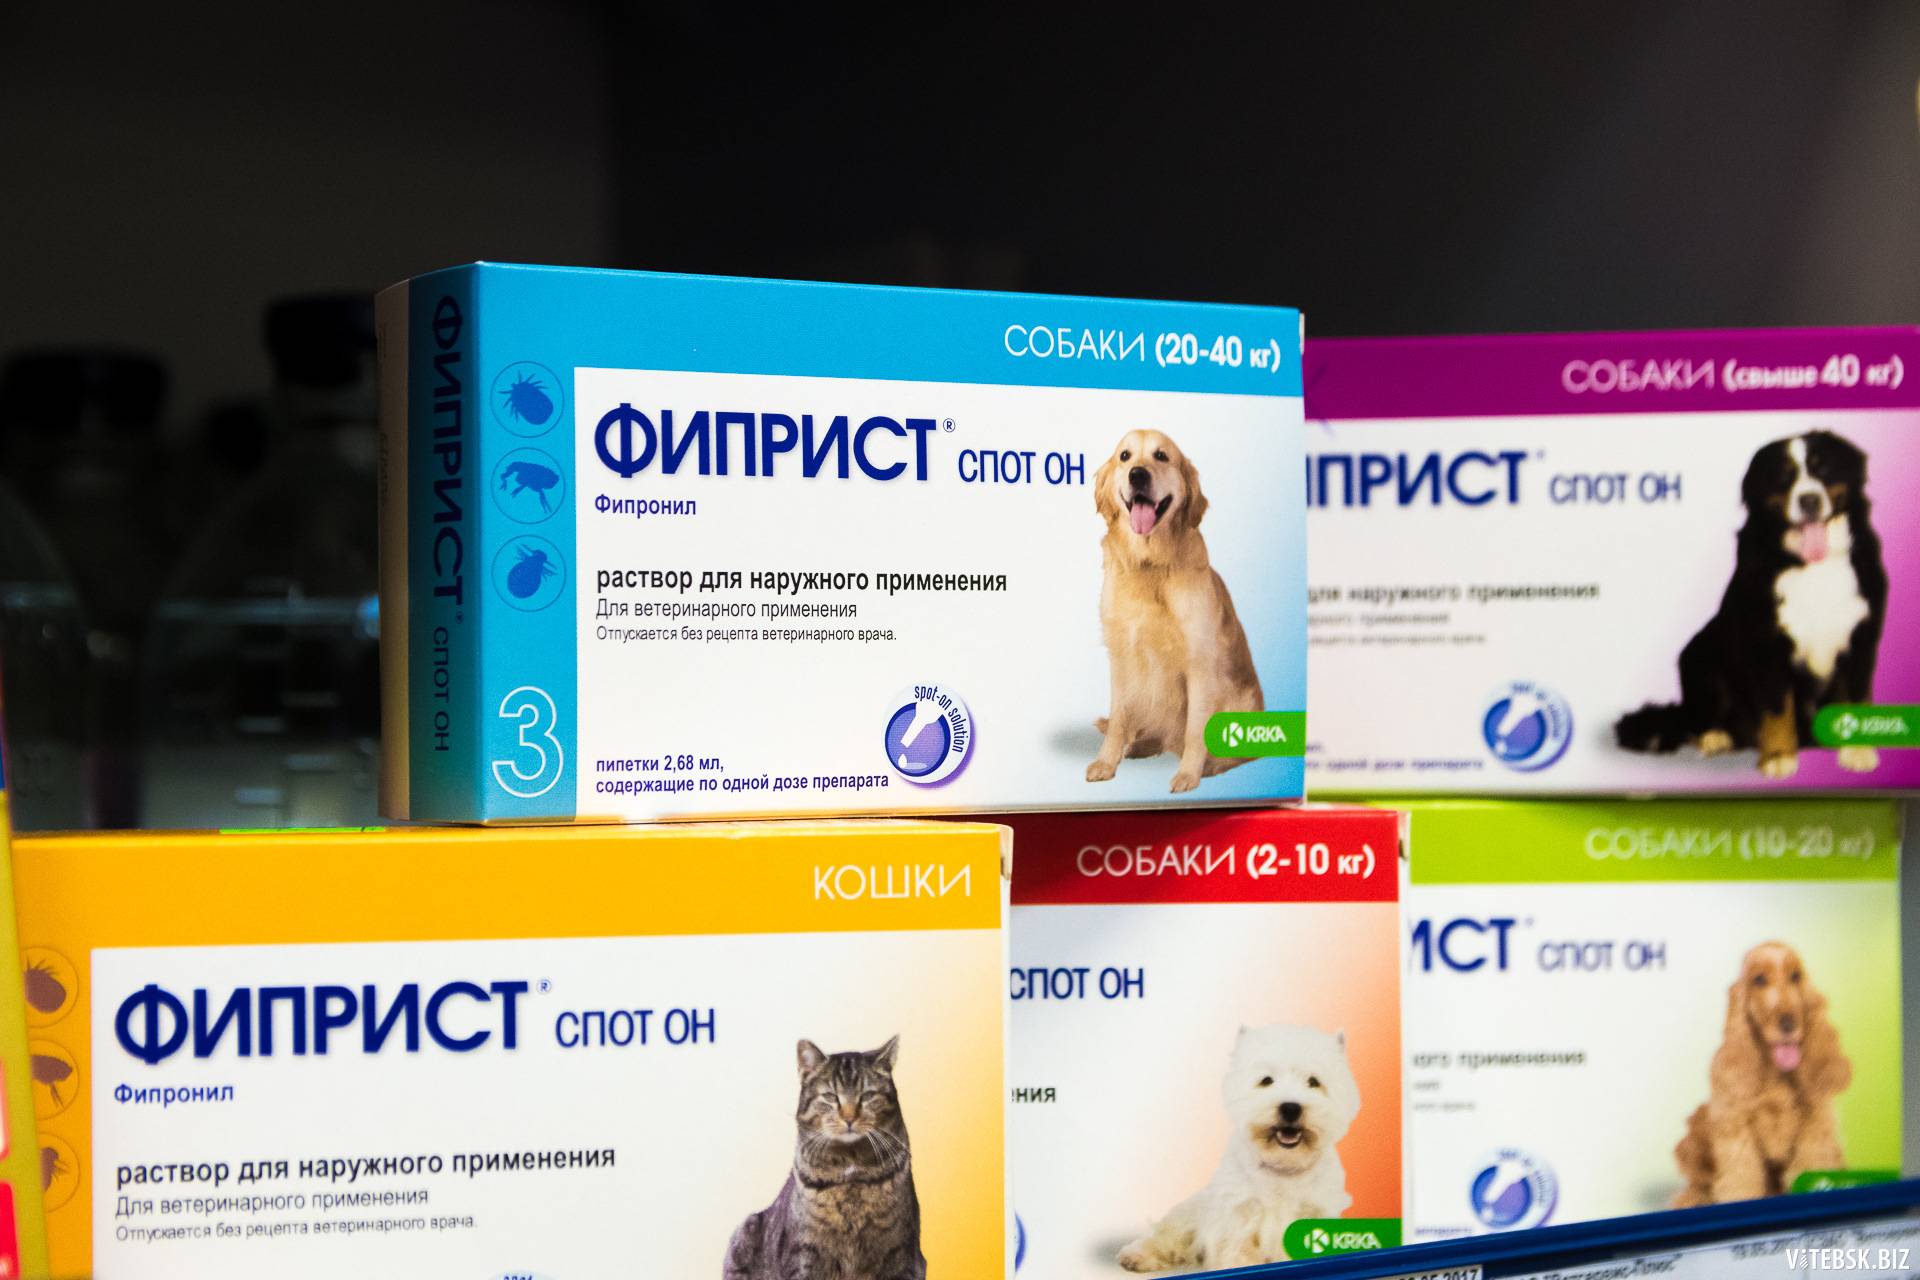 «фиприст» для кошек: инструкция по применению препарата от блох и побочные эффекты